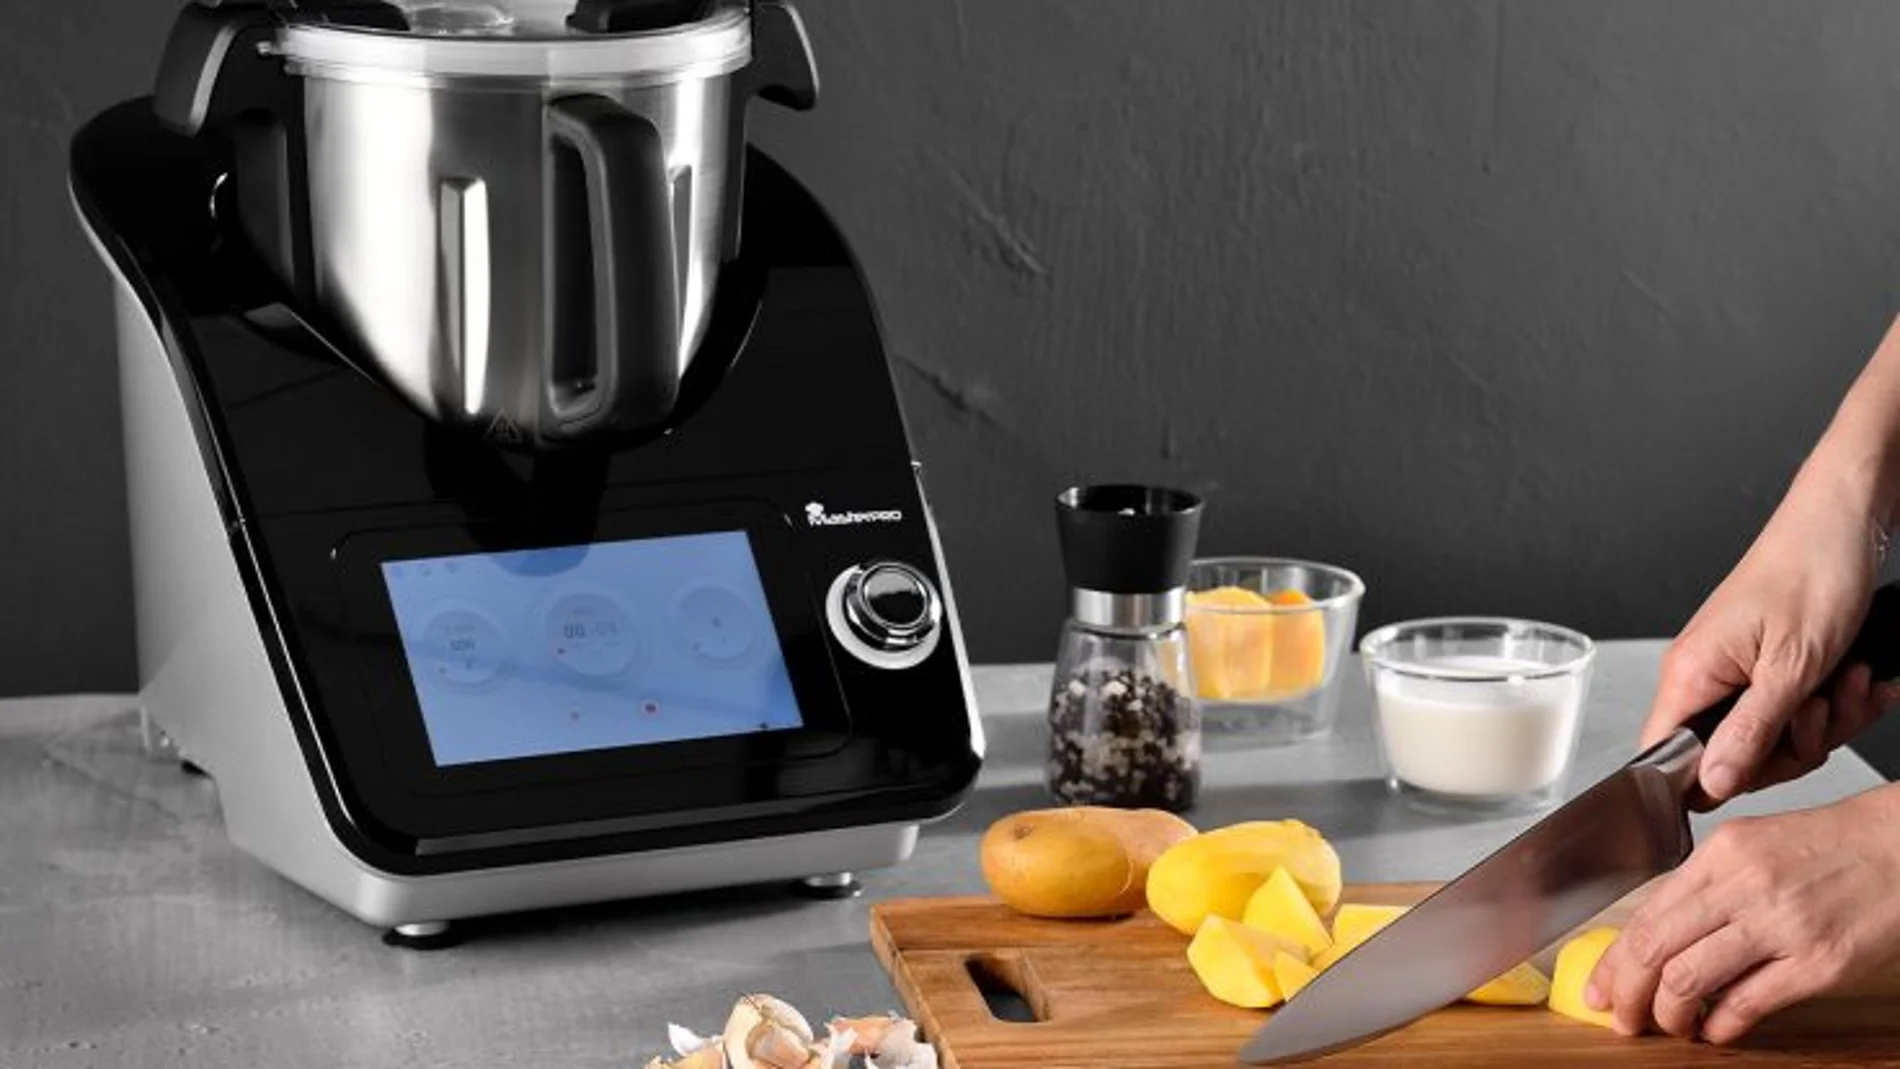 Robot de cocina MasterPRO con pantalla táctil y recetas mejoradas